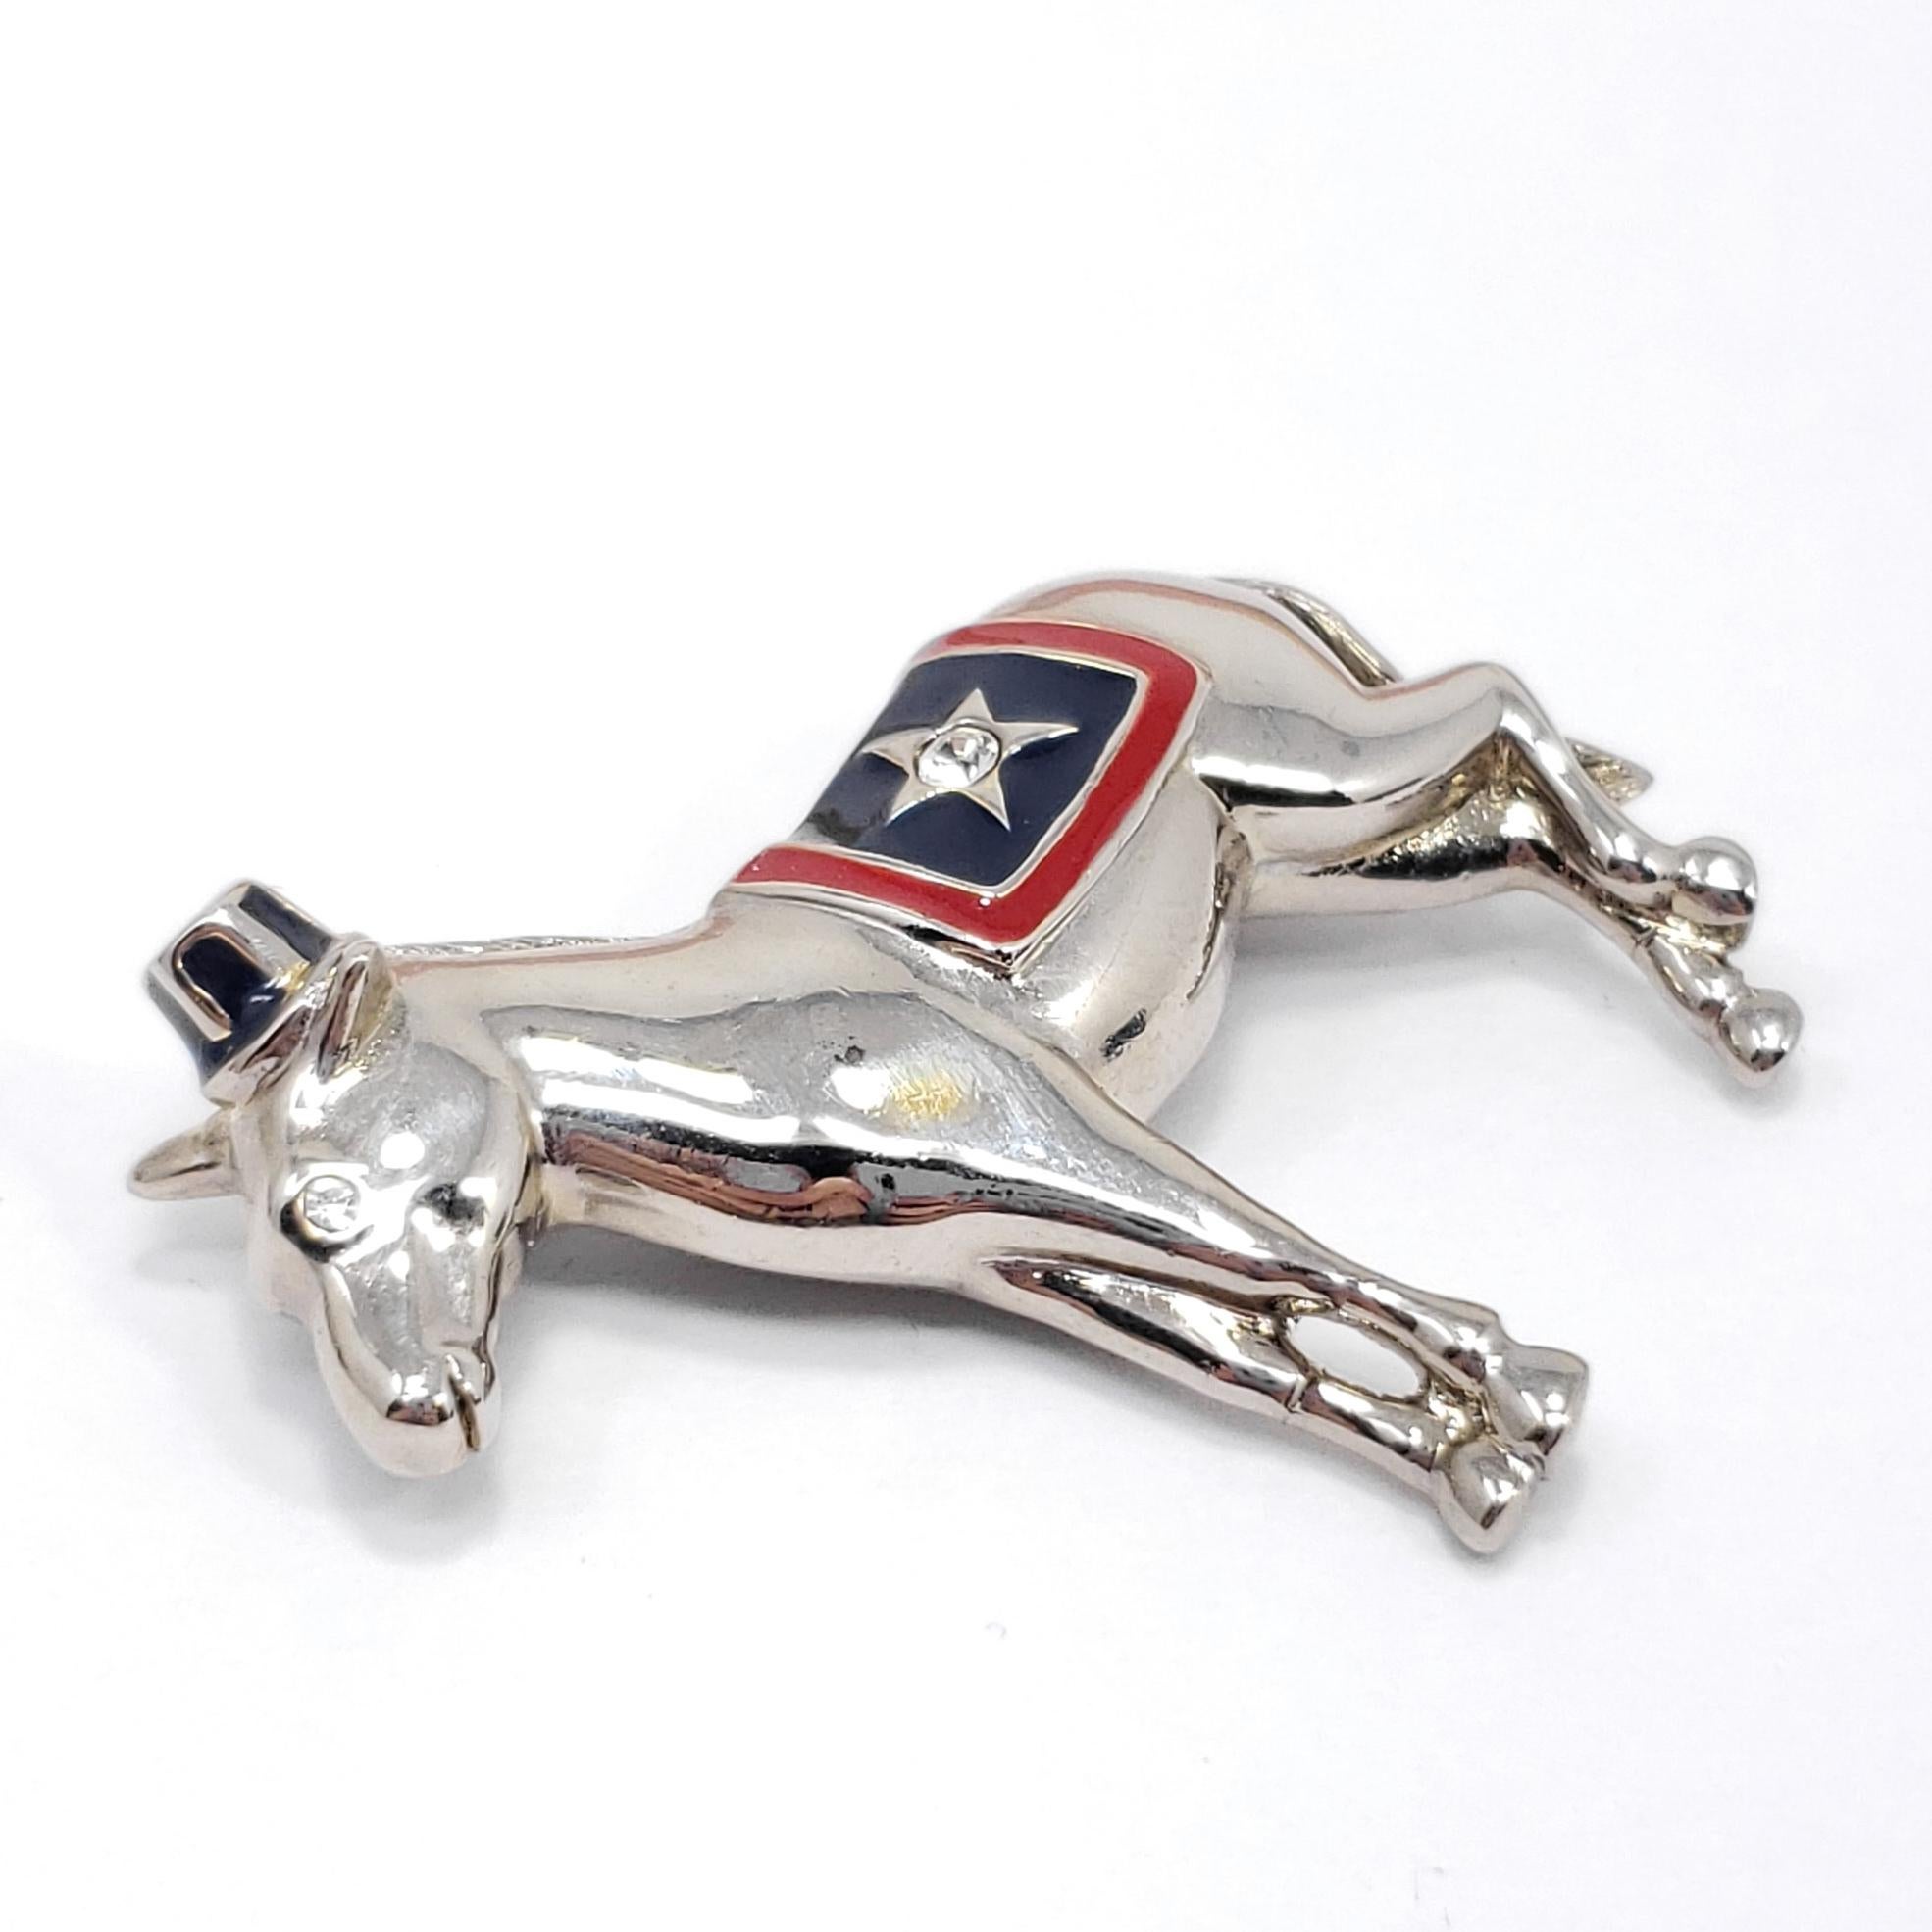 Ce pin's patriotique représente un âne en argent, rehaussé de cristaux clairs et d'émaux rouges et bleus. Par Monet.

Marques / poinçons / etc : Monet